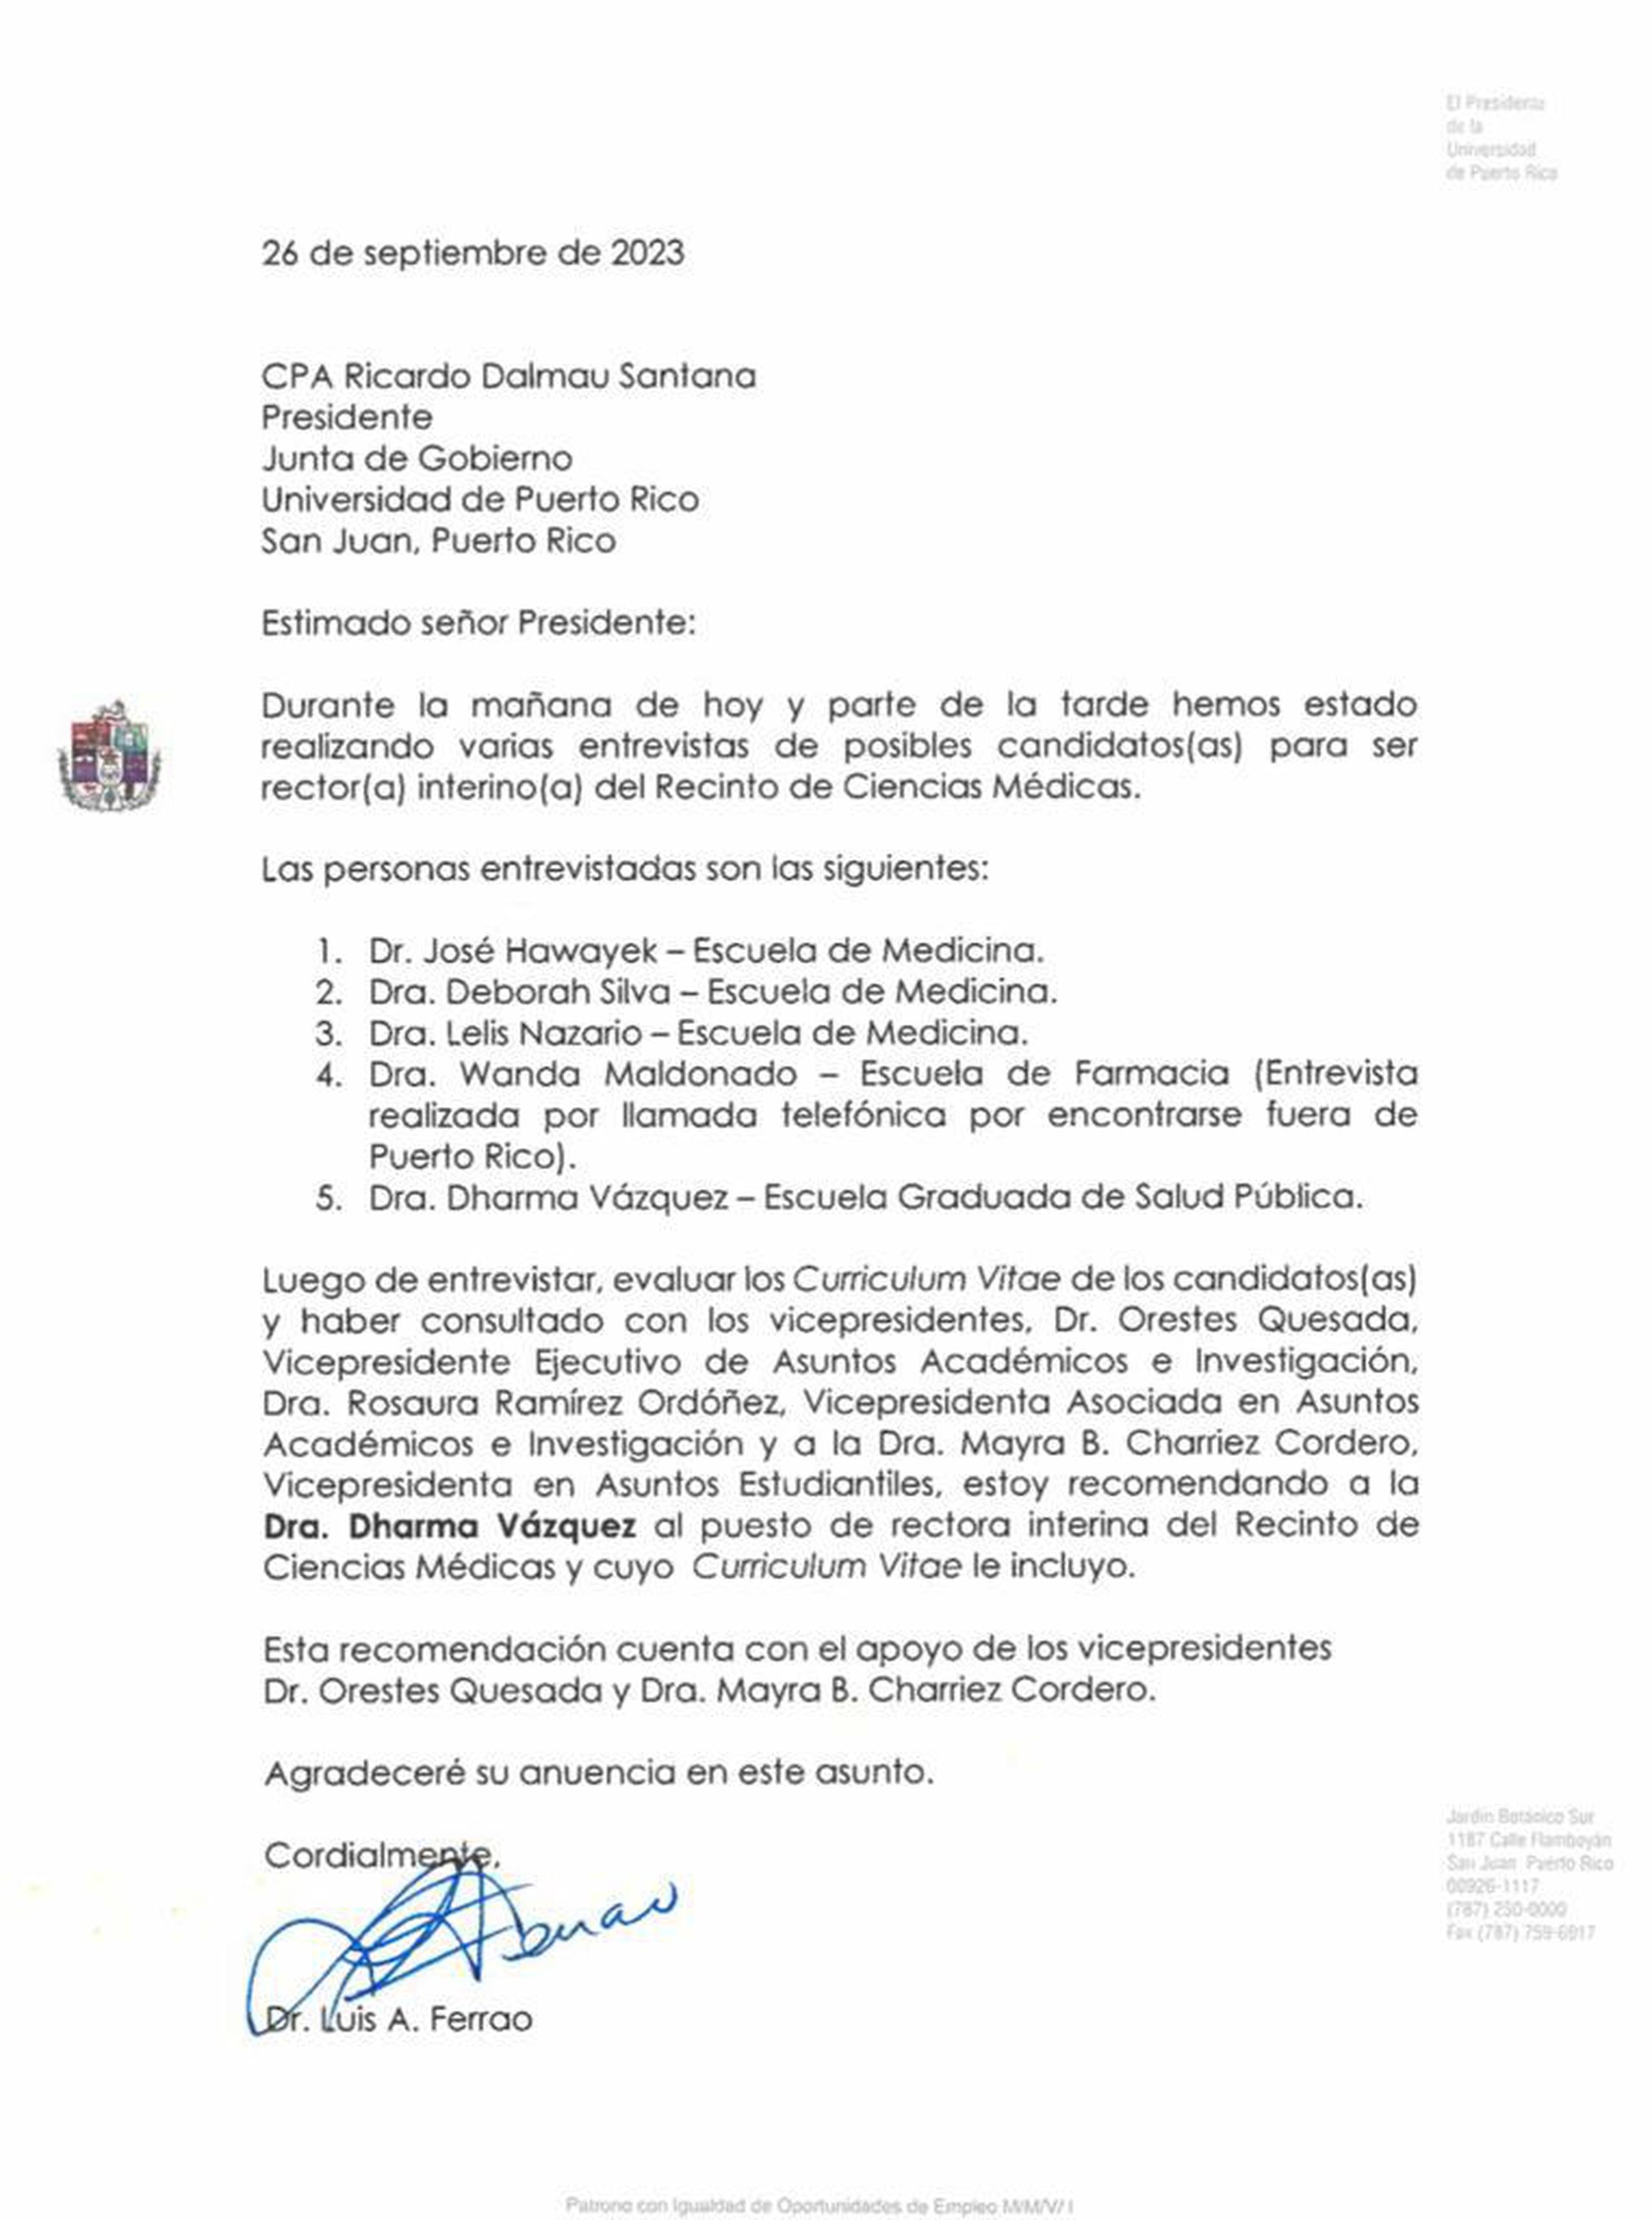 Carta del presidente de la Universidad de Puerto Rico enviada a la Junta de Gobierno para recomendar a la doctora Dharma Vázquez.